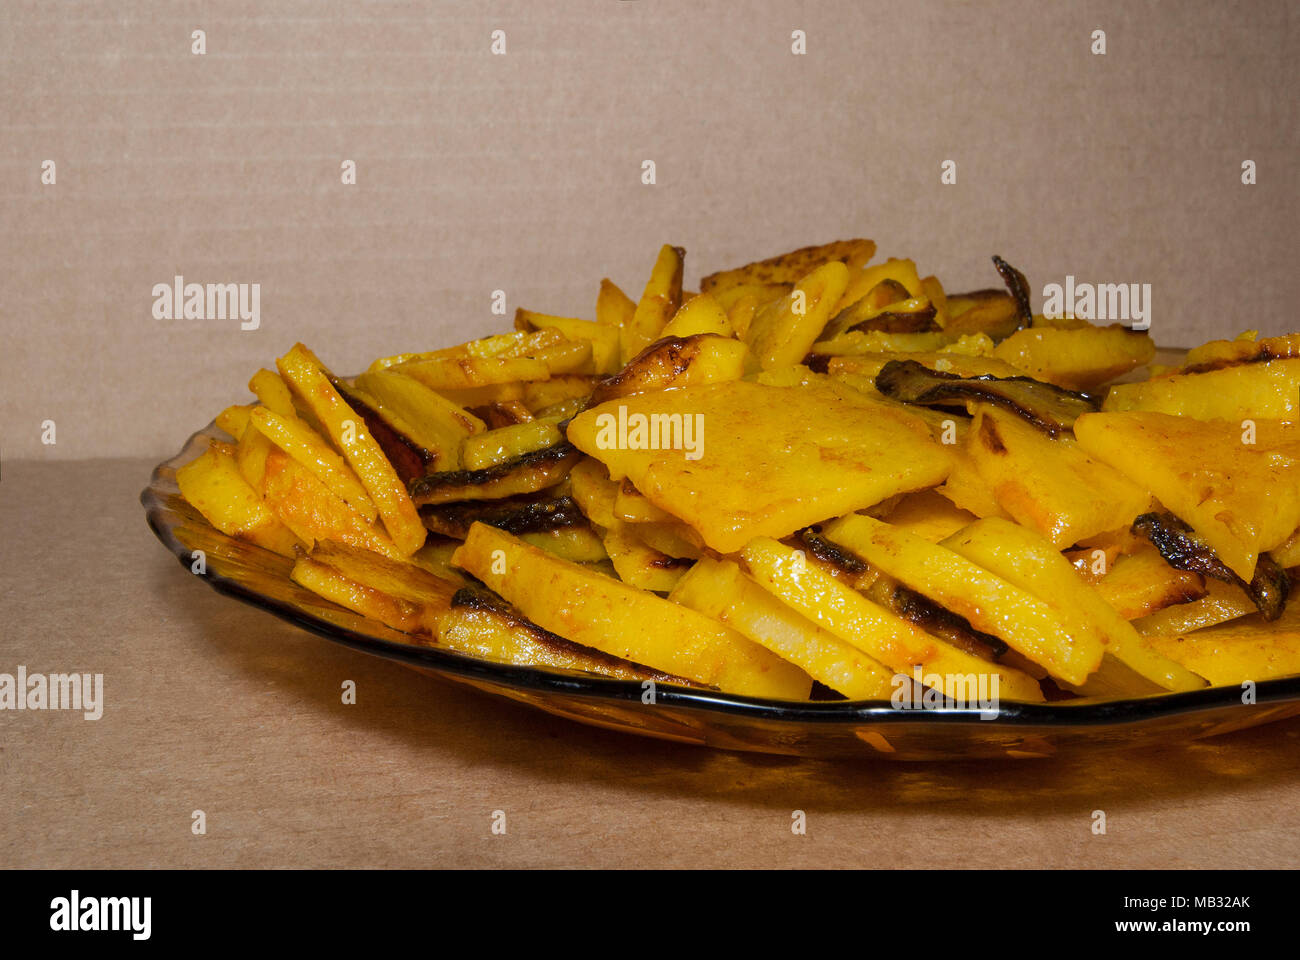 Gebratene Kartoffeln, gewürzt mit Kurkuma, auf einer Platte liegen. Ein heisses Land Mahlzeit. Stockfoto